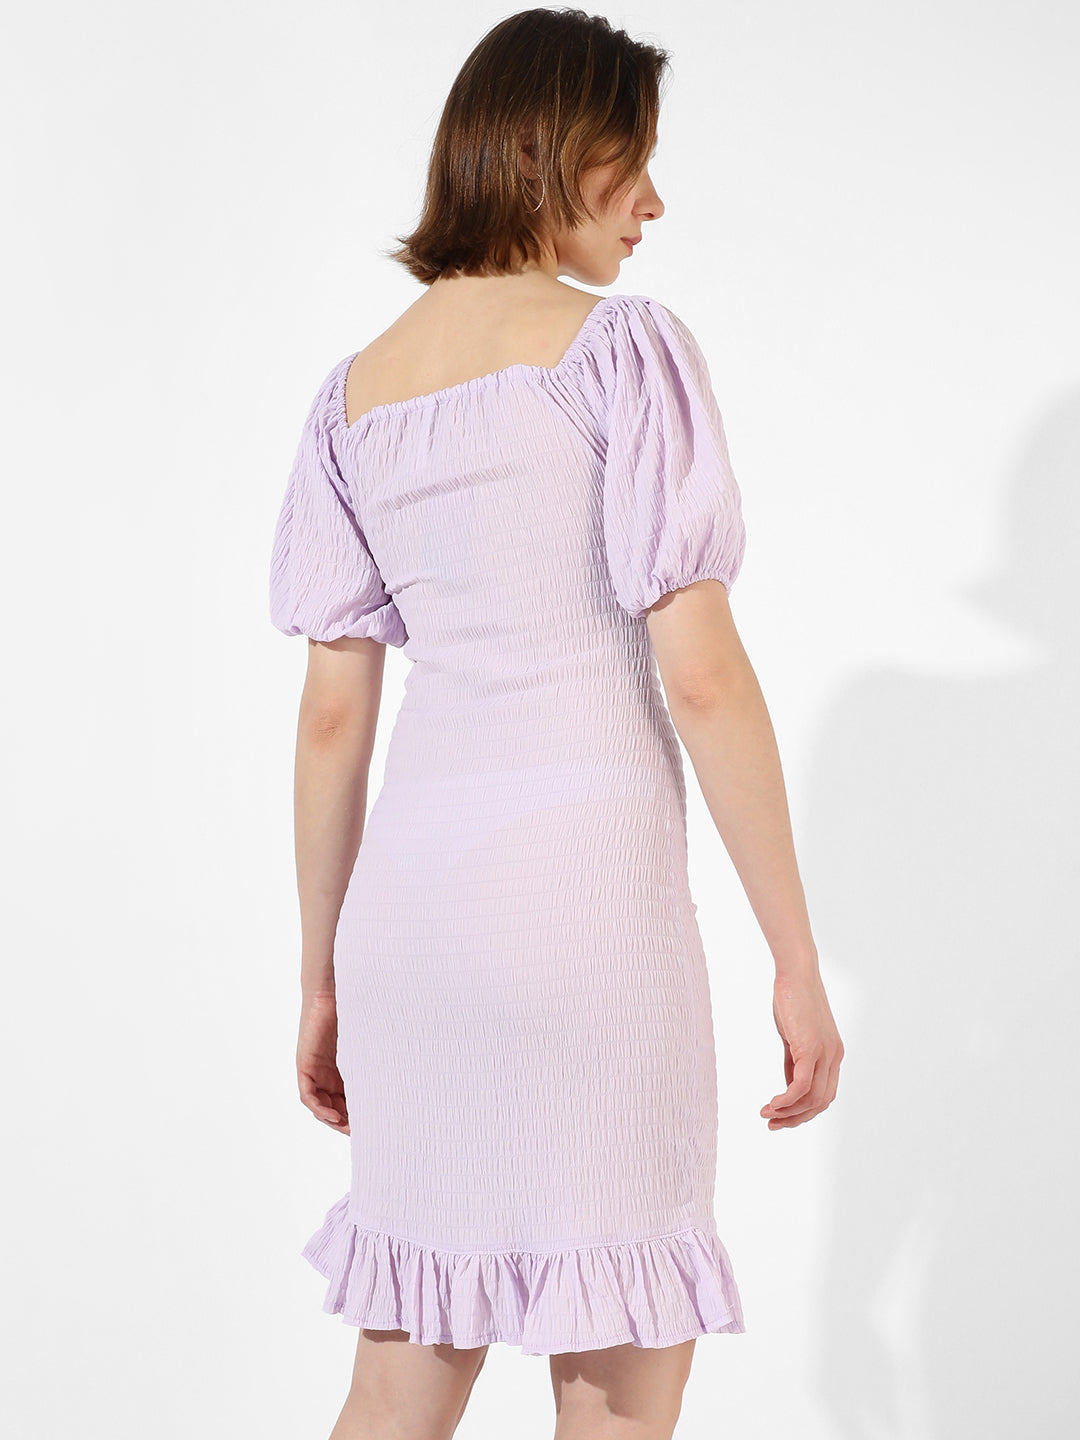 Solid Lavender Dress